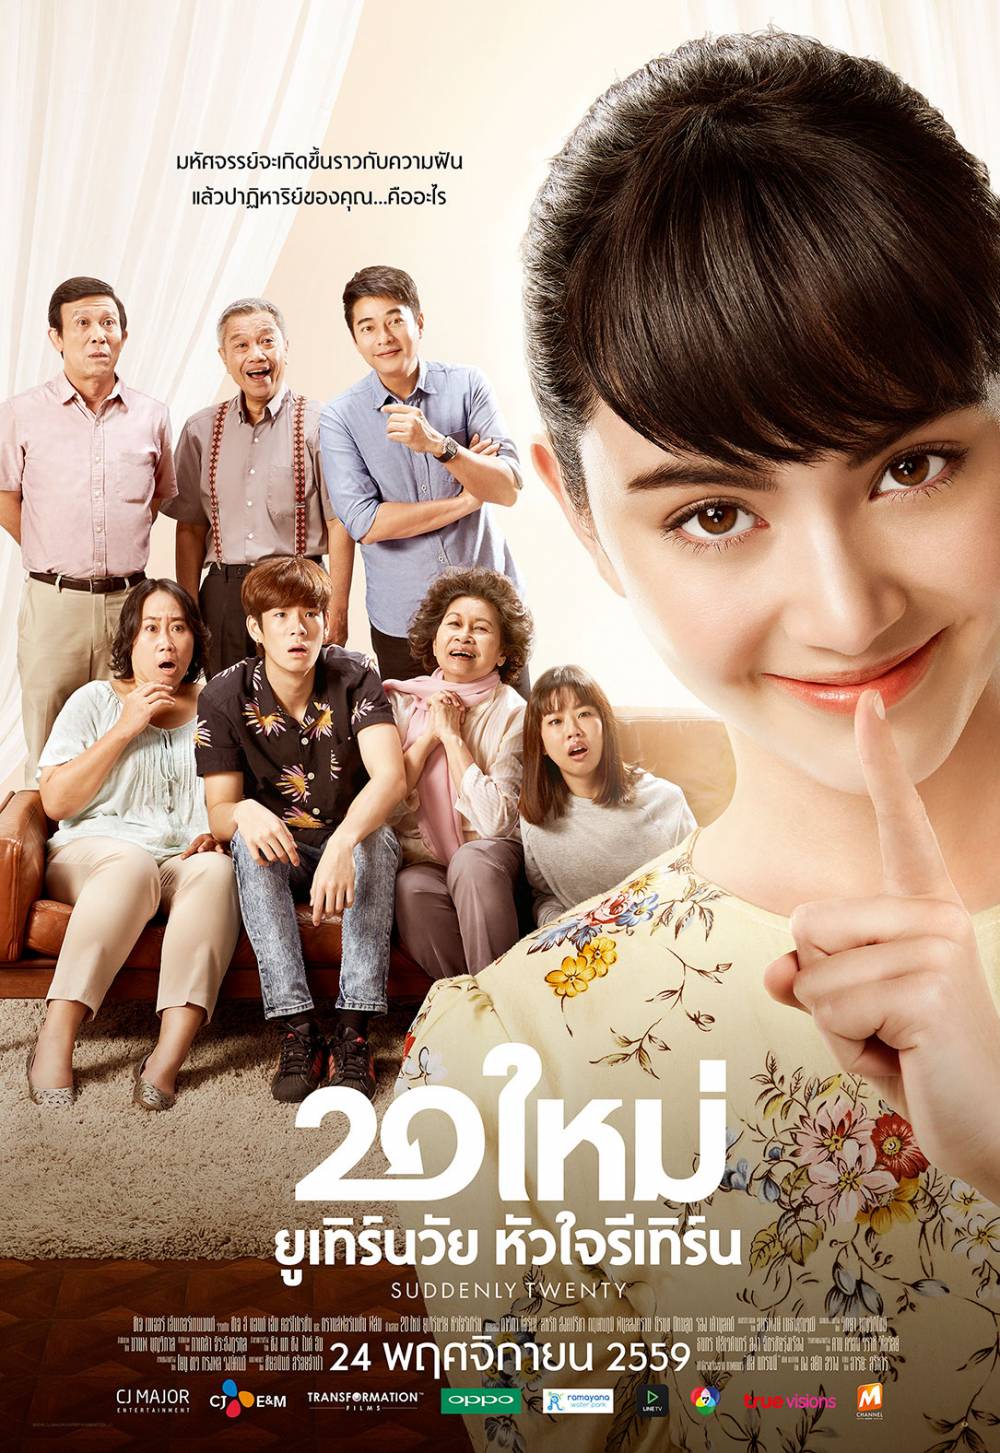 Phim Thái Lan Mai Davika đóng: Bà nội tuổi 20 - Suddenly Twenty (2016)